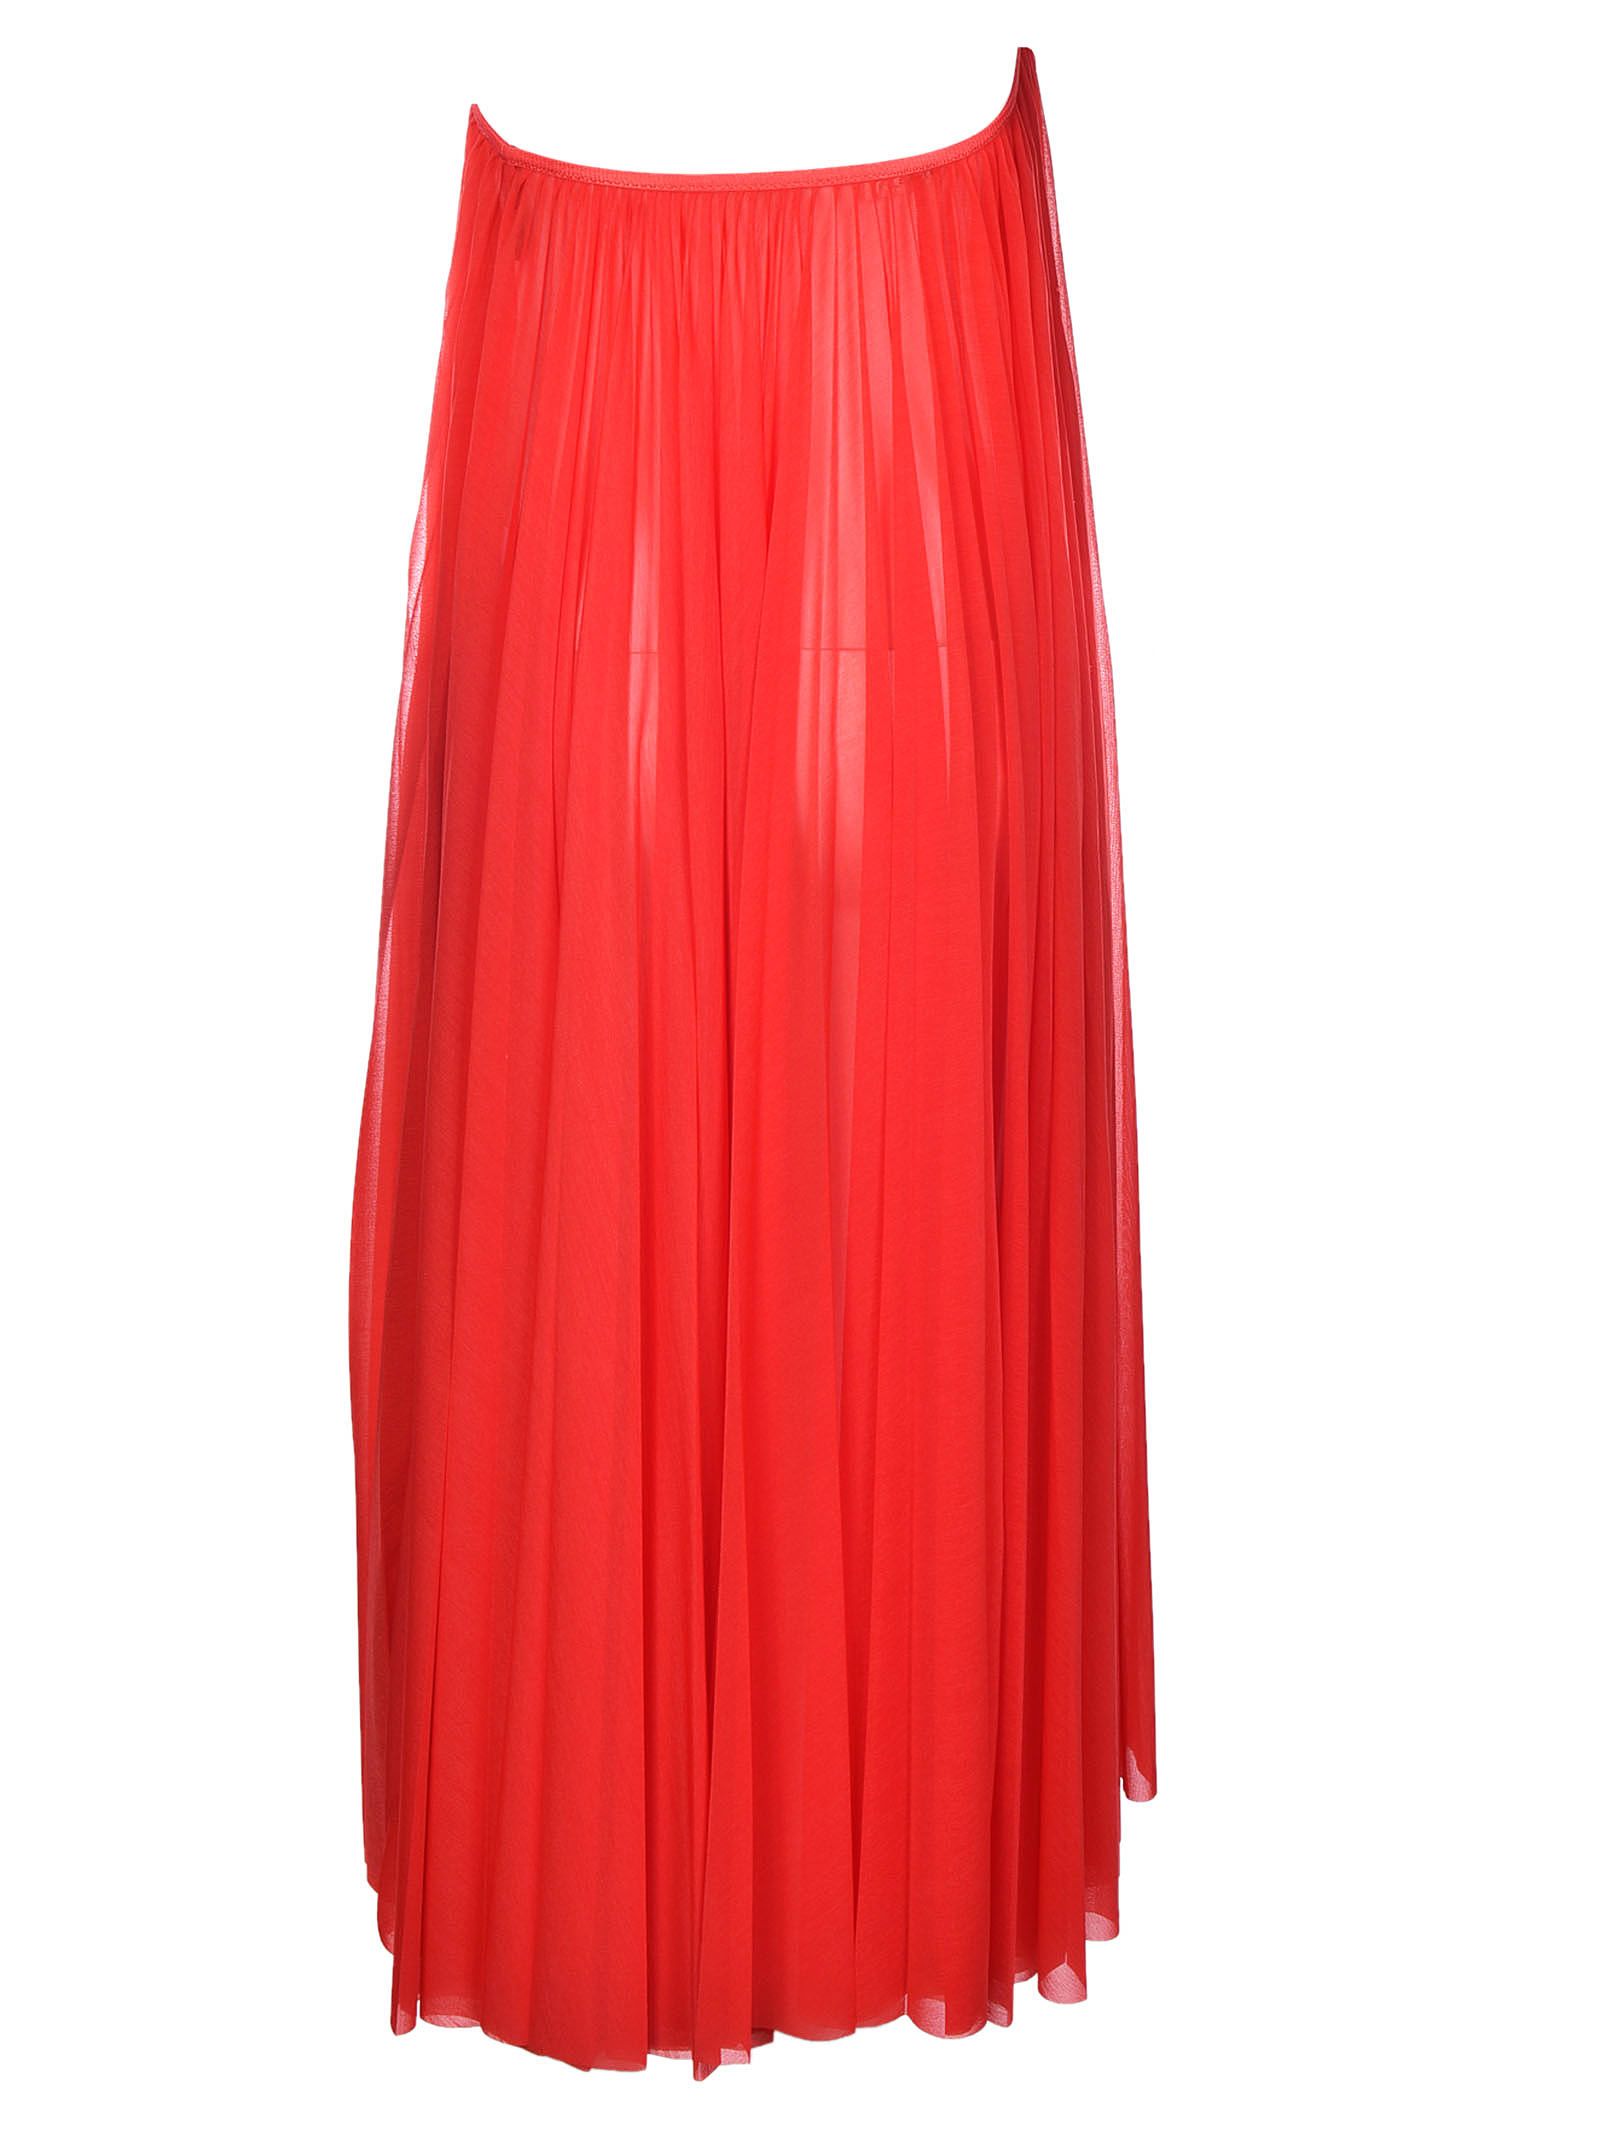 Celine - Celine Tube Dress - Red, Women's Dresses | Italist